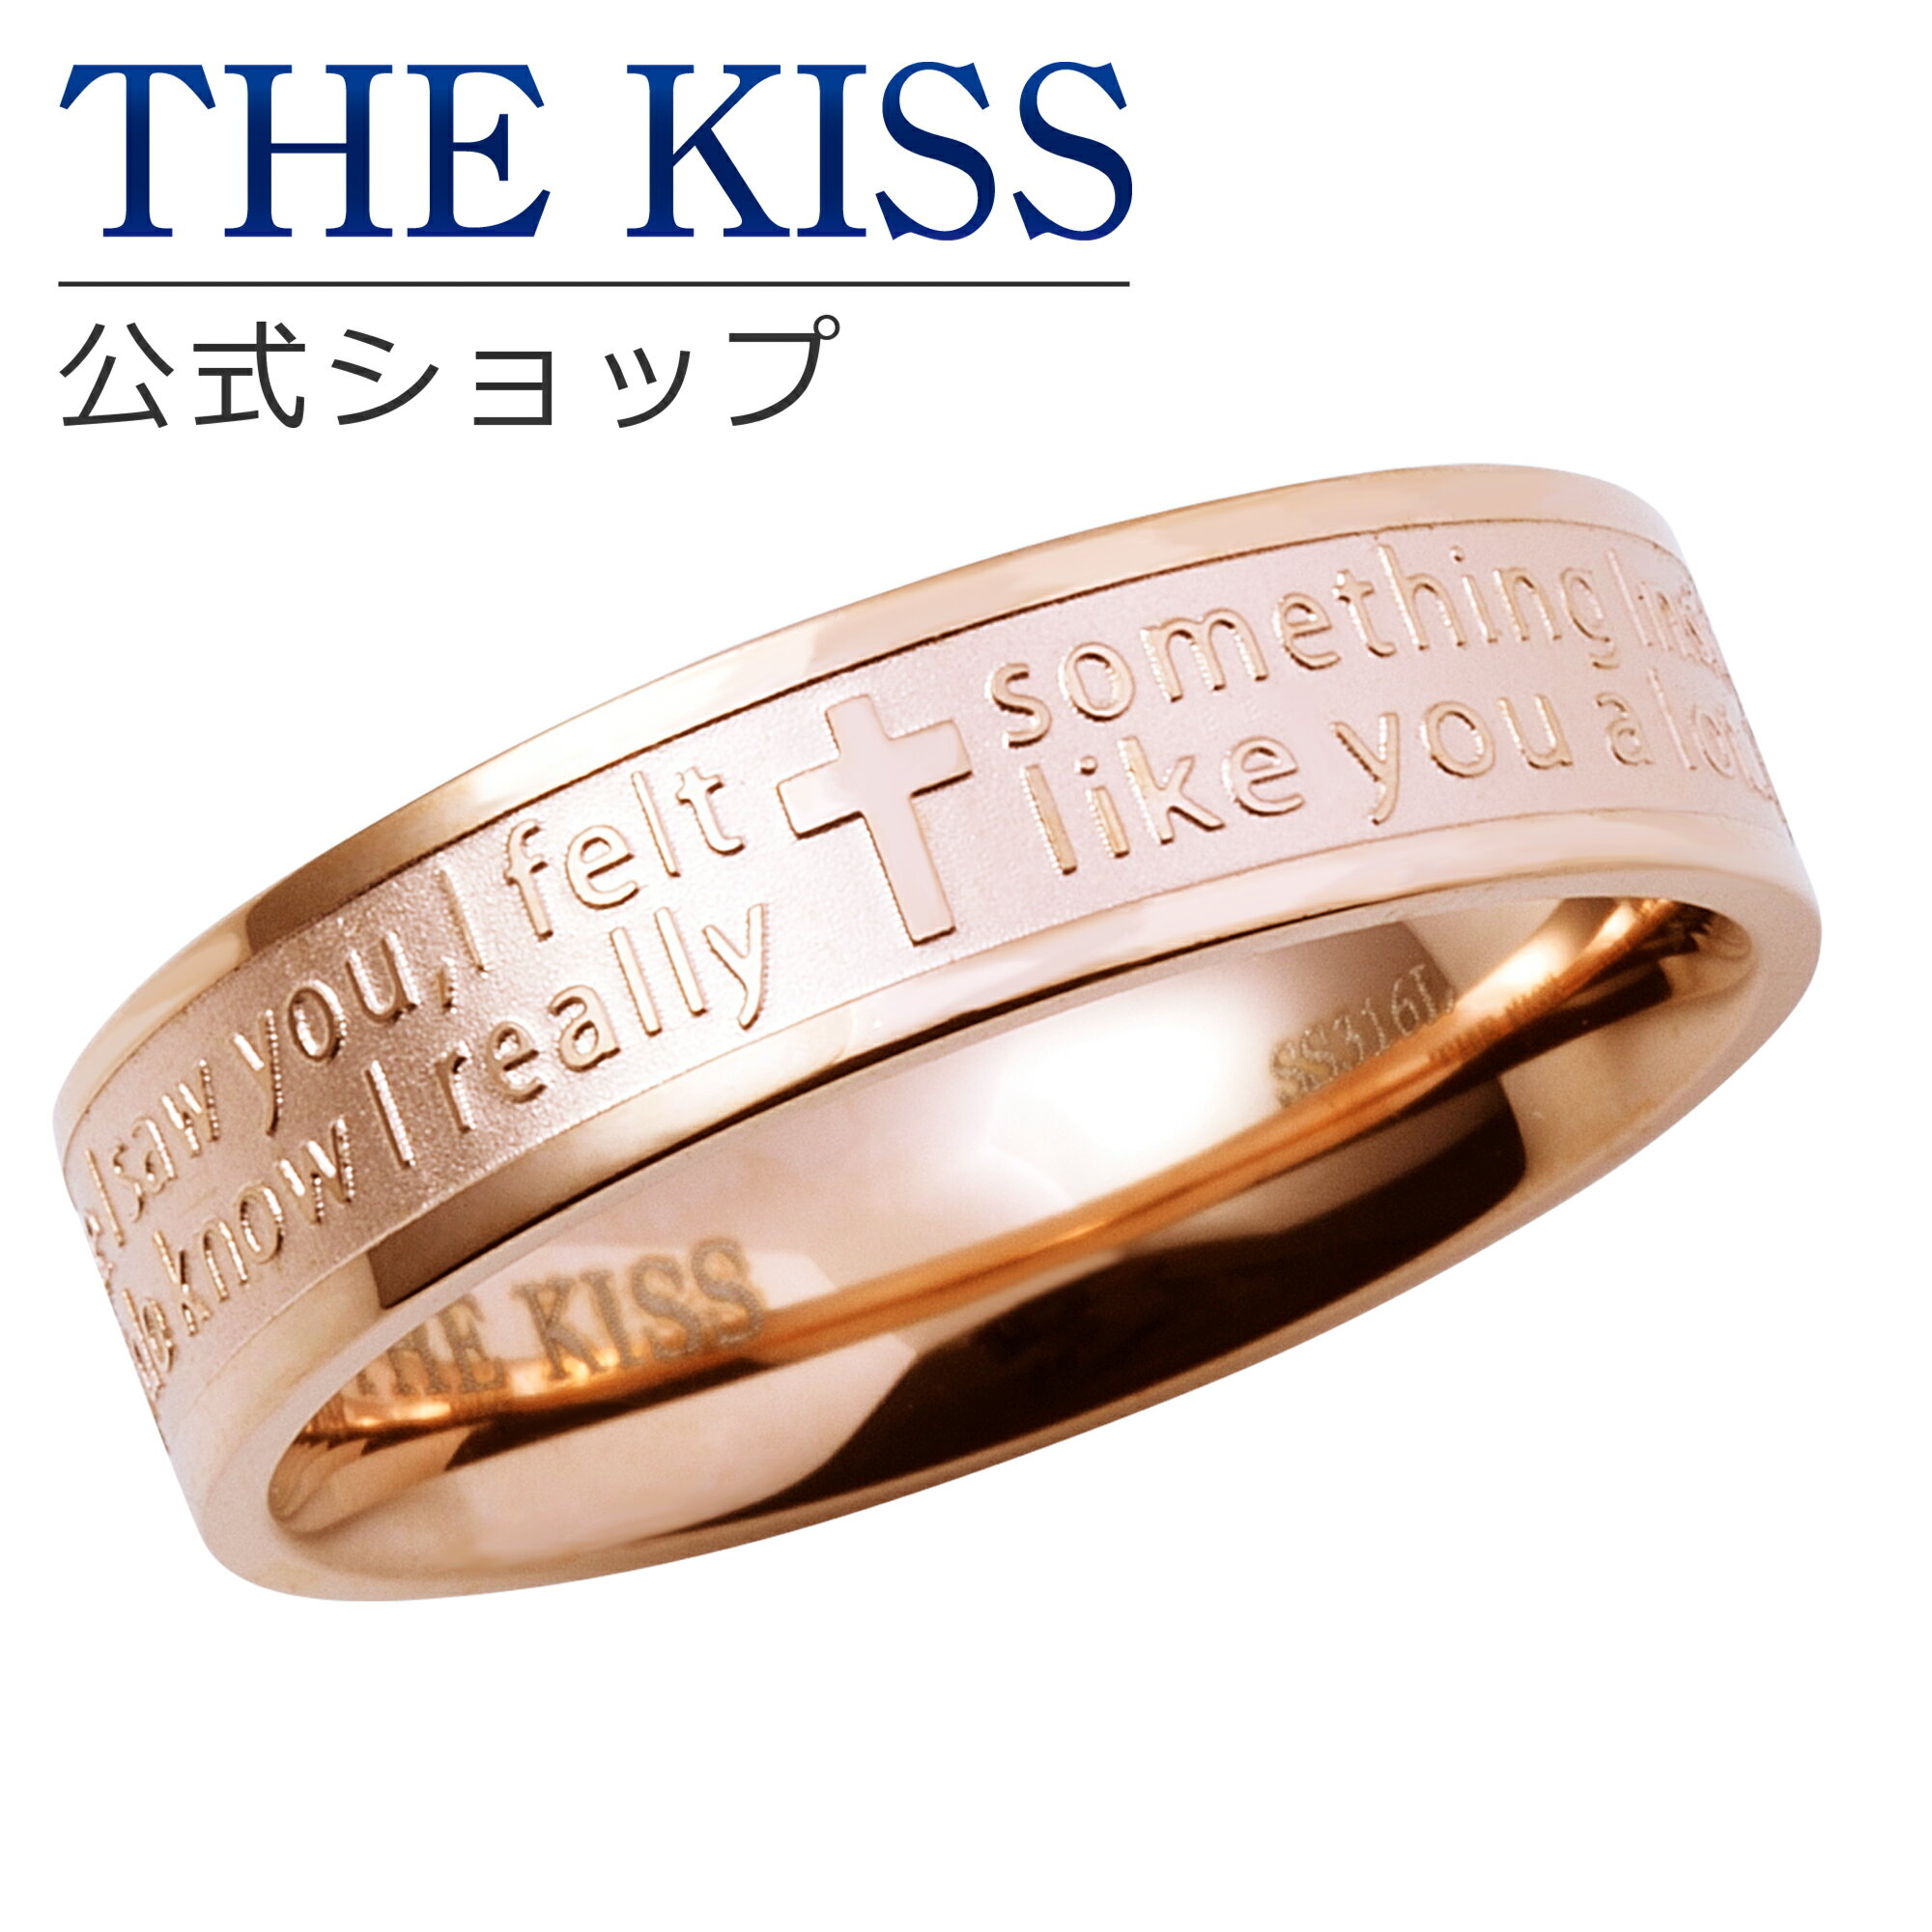 THE KISS 公式ショップ ペアリング 太め 金属アレルギー対応 サージカルステンレス レディース・メンズ 単品 ペアアクセサリー カップル 人気 ジュエリーブランド THEKISS 指輪 プレゼント TR1030PI 母の日